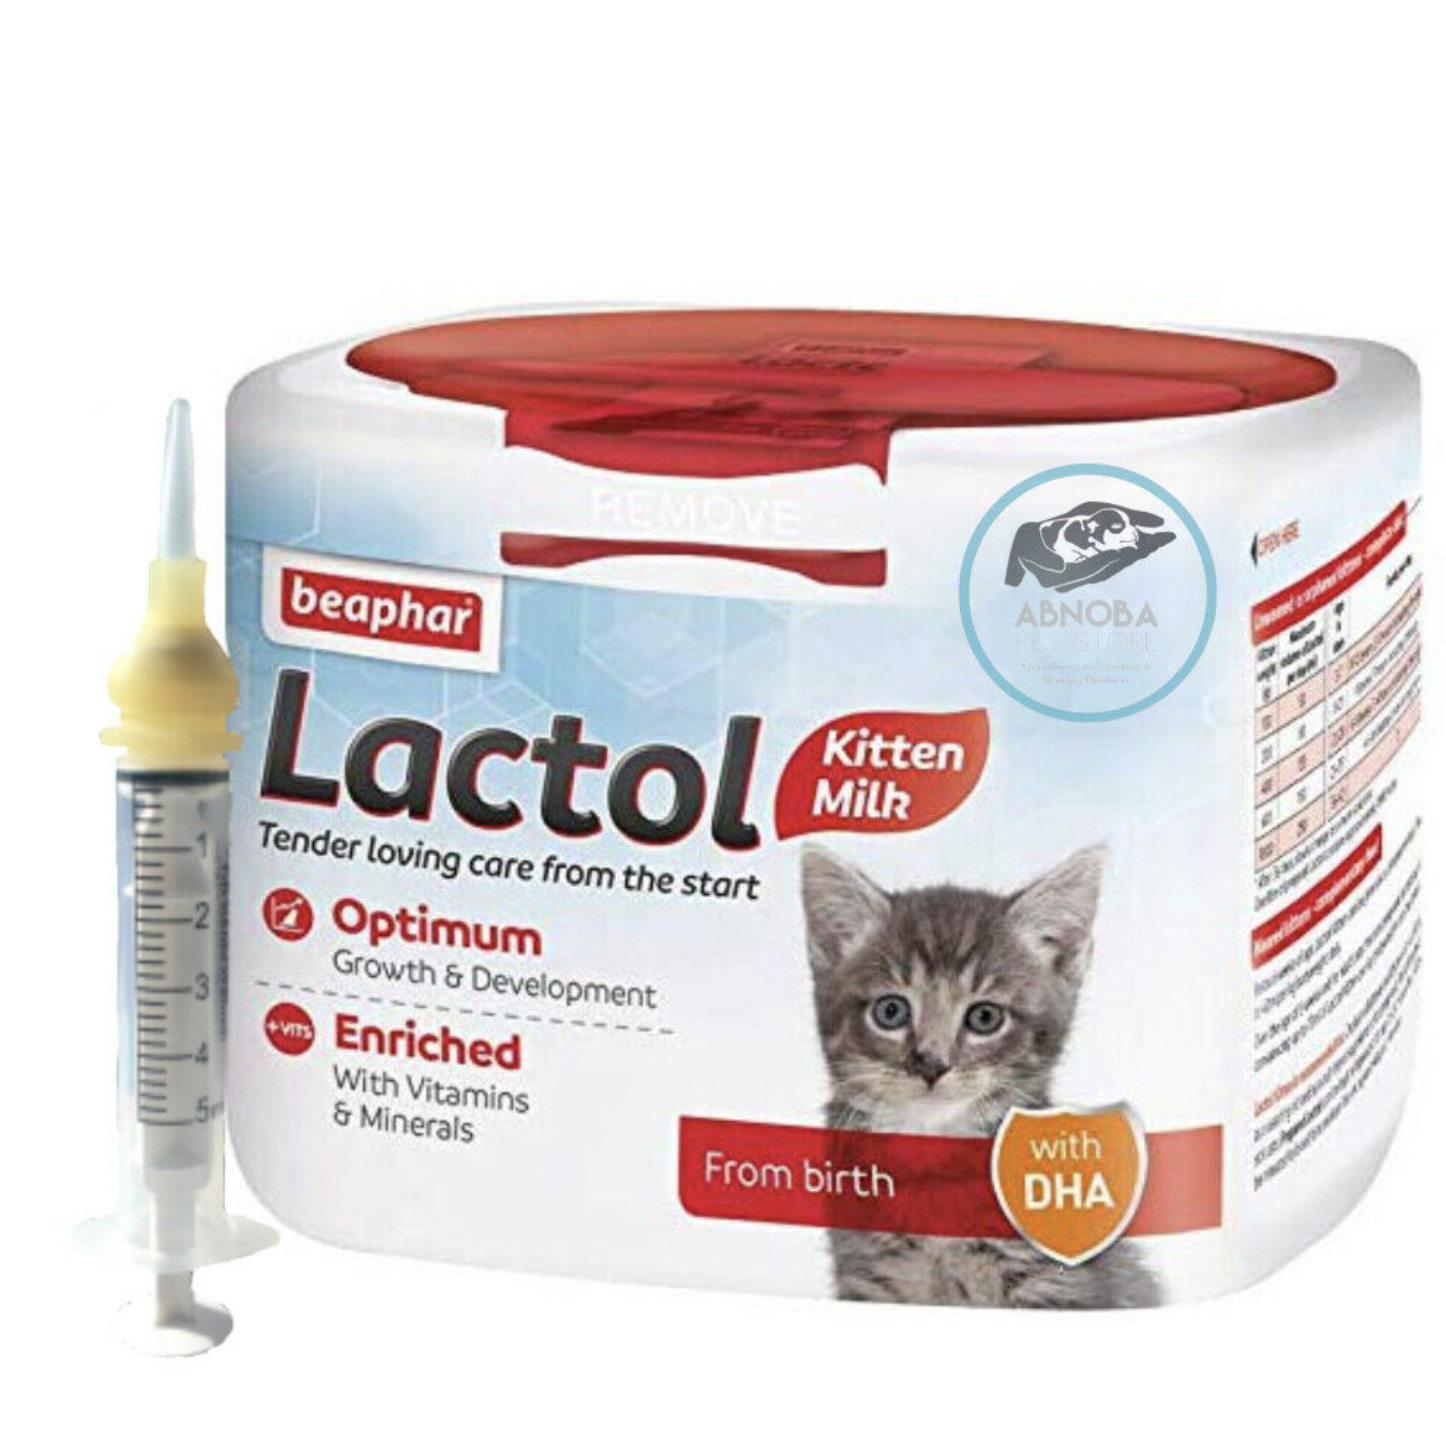 250g Kitten Milk Beaphar Lactol + Cleft / Longer Nipple Syringe